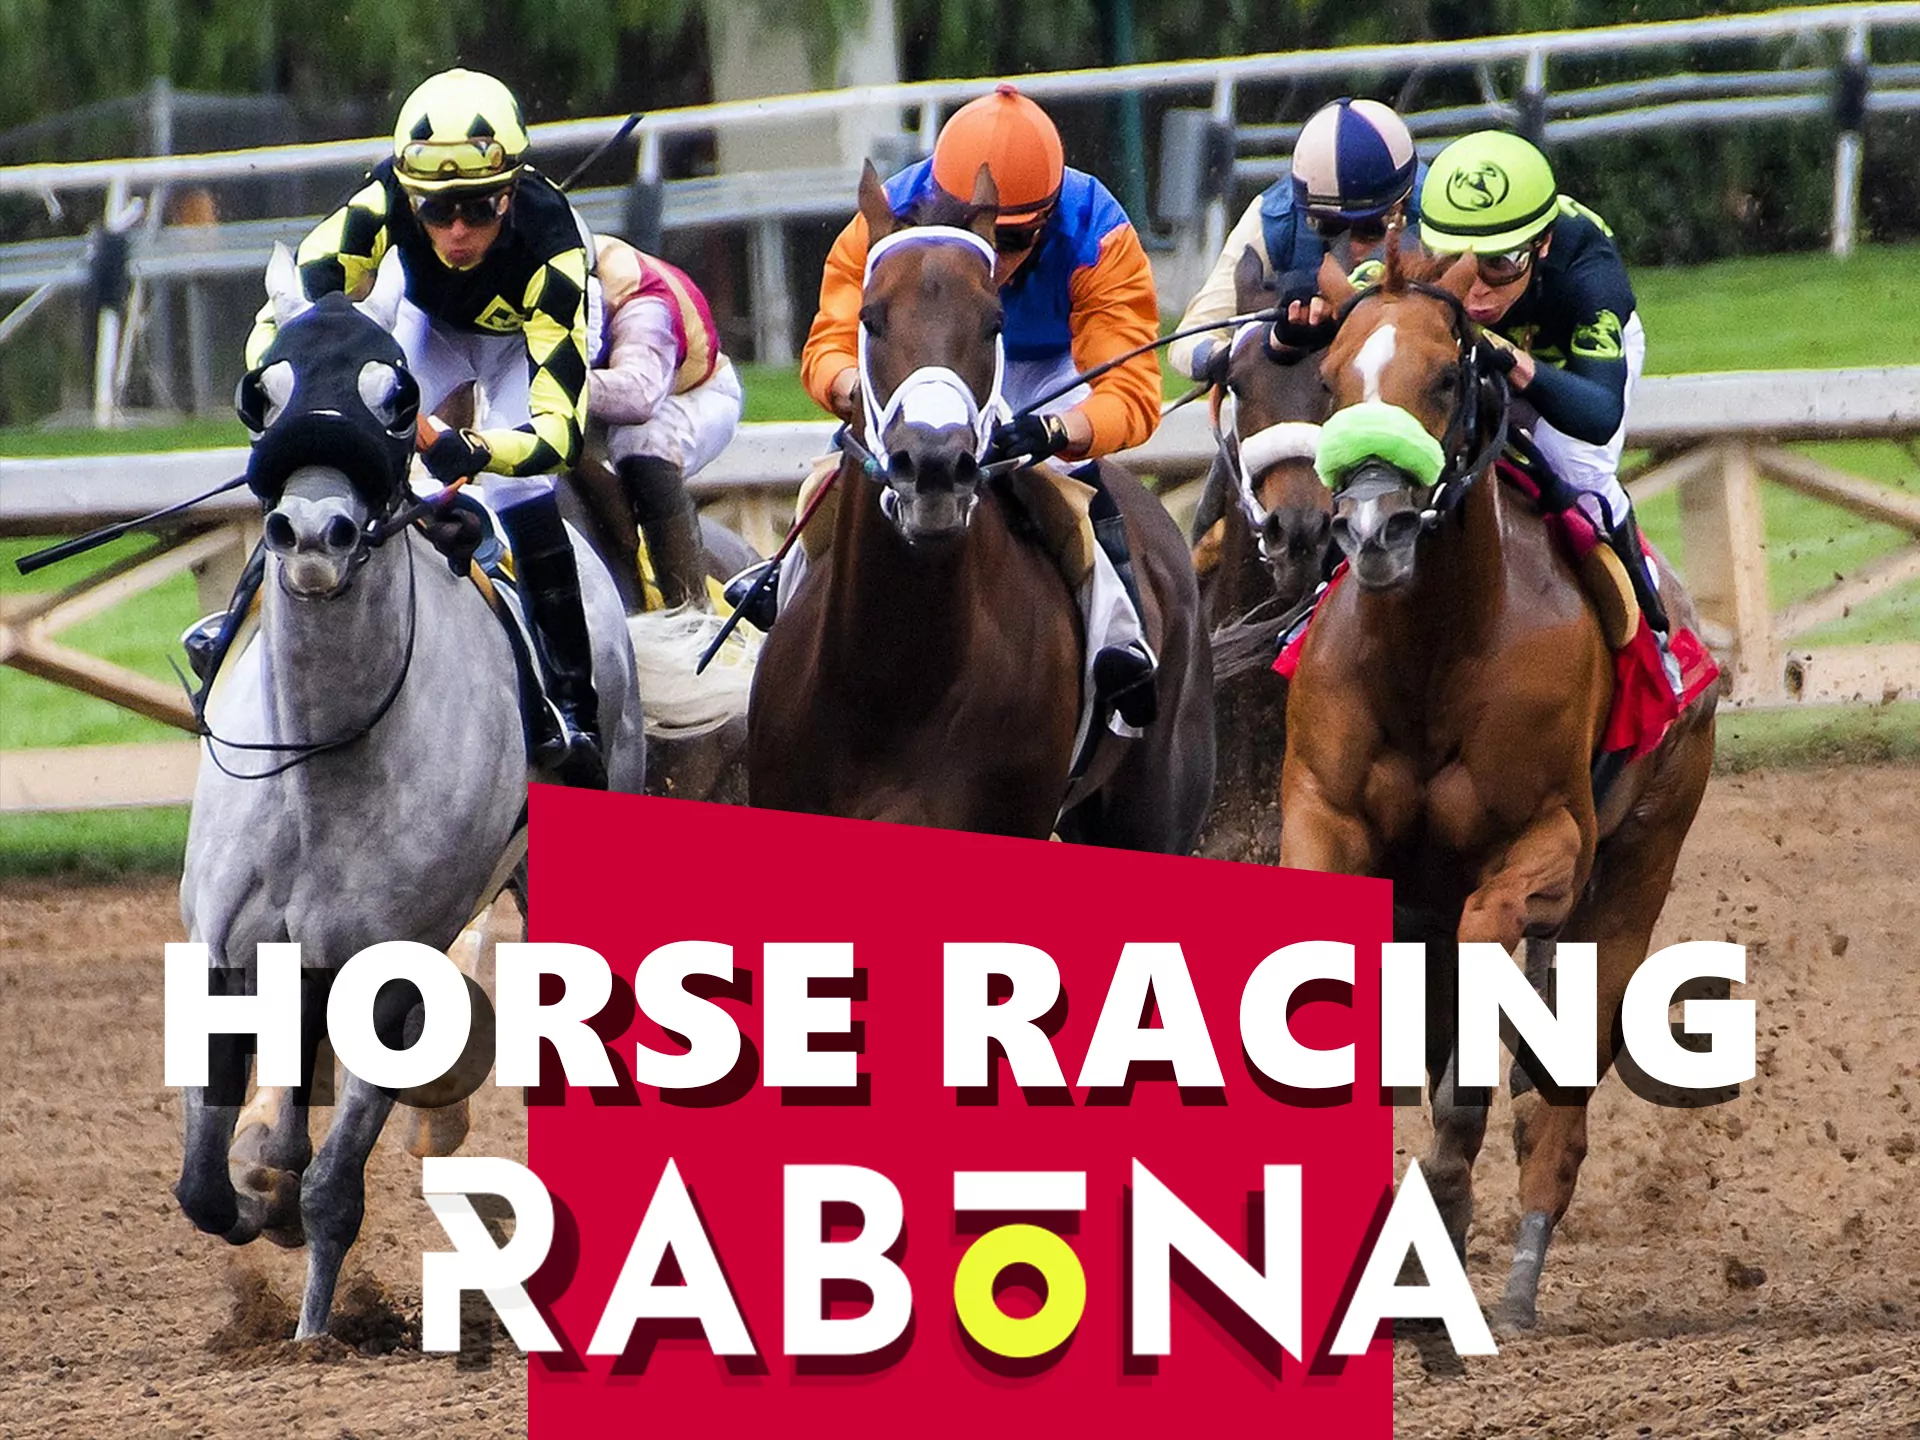 Horse racing betting on Rabona.